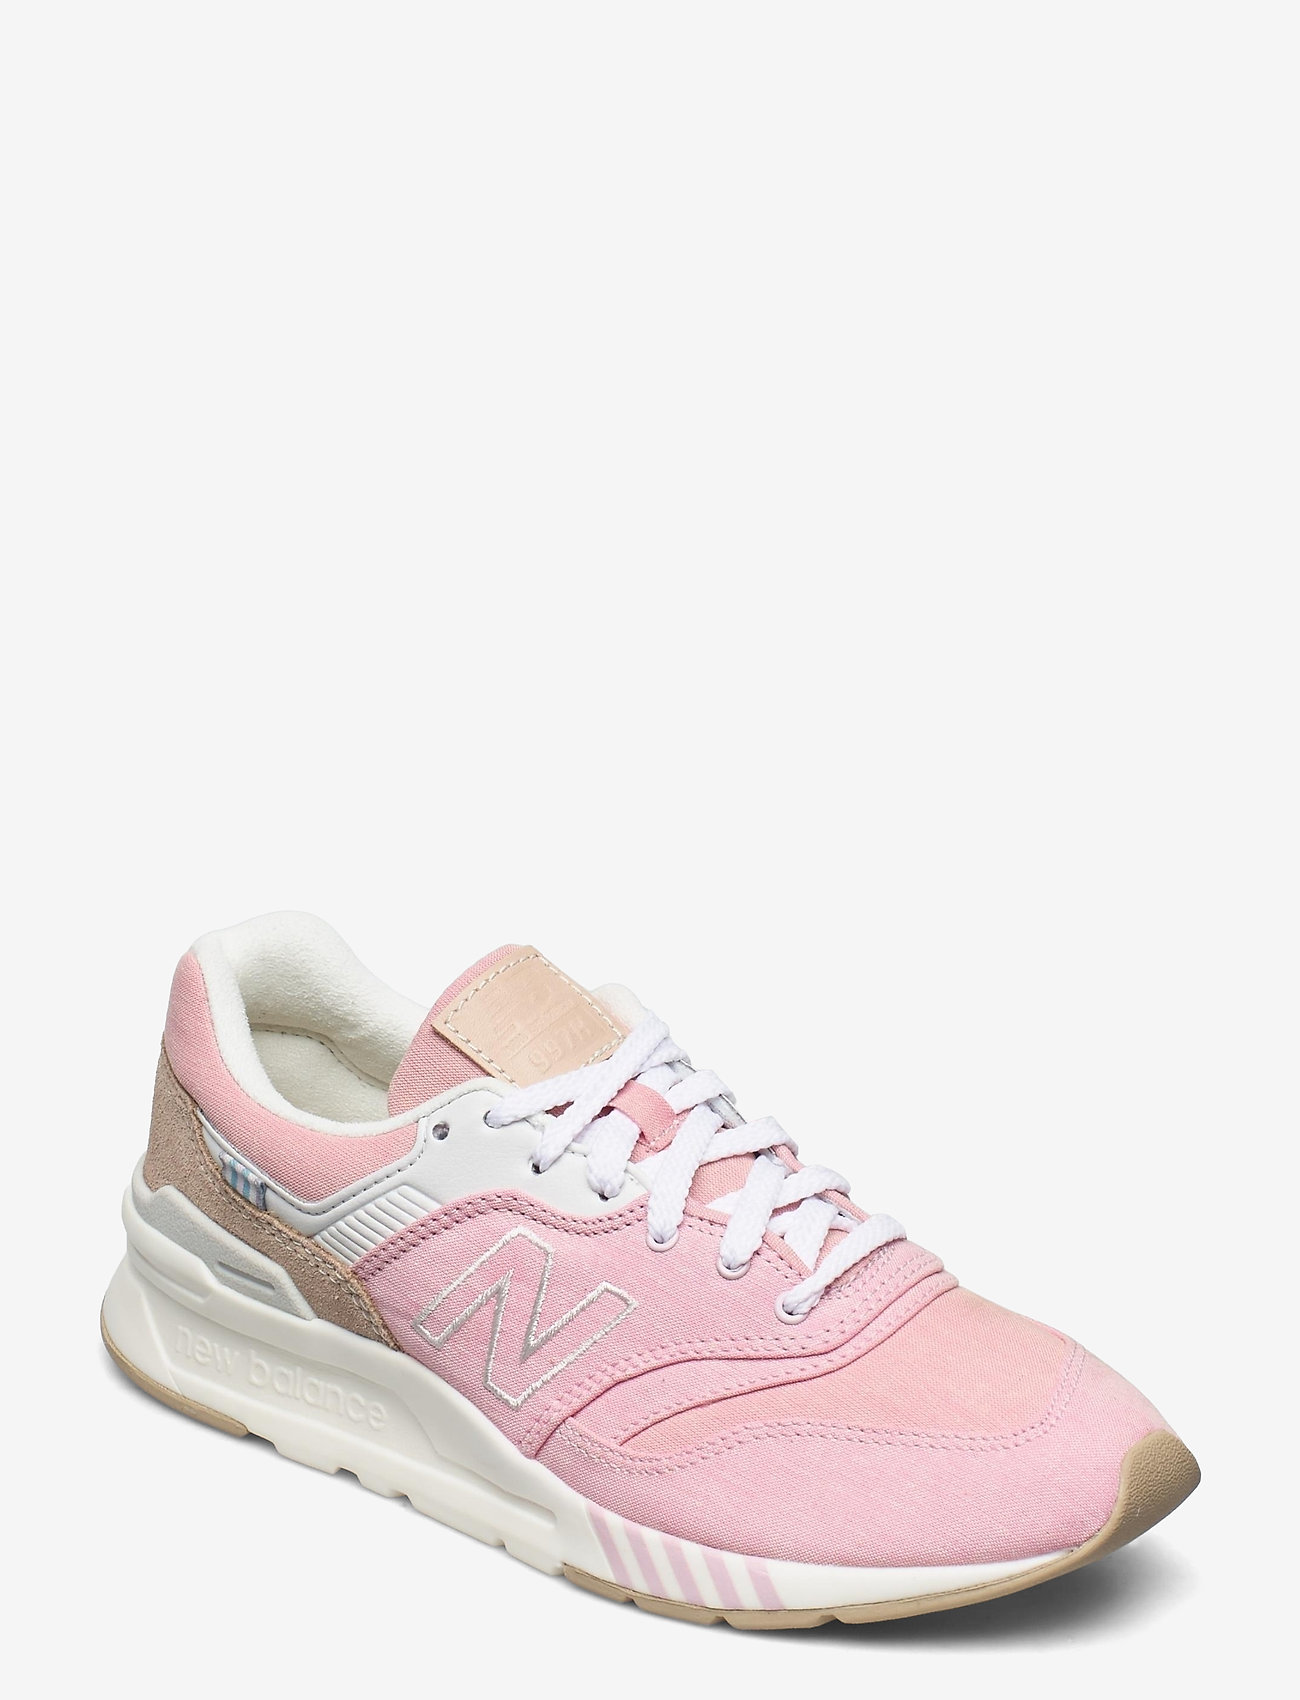 desert rose shoes